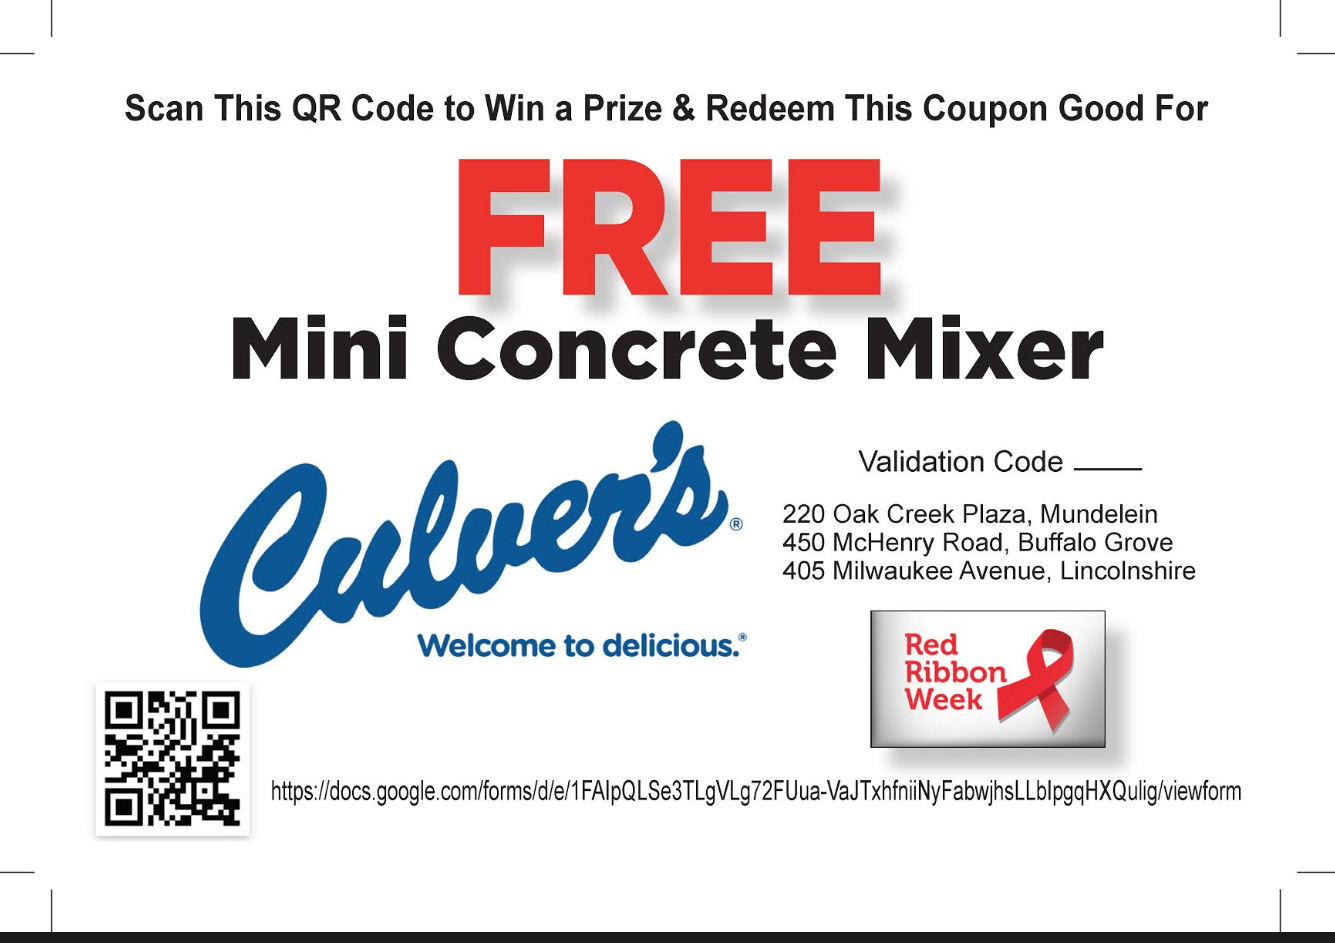 Free Mini Concrete Mixer